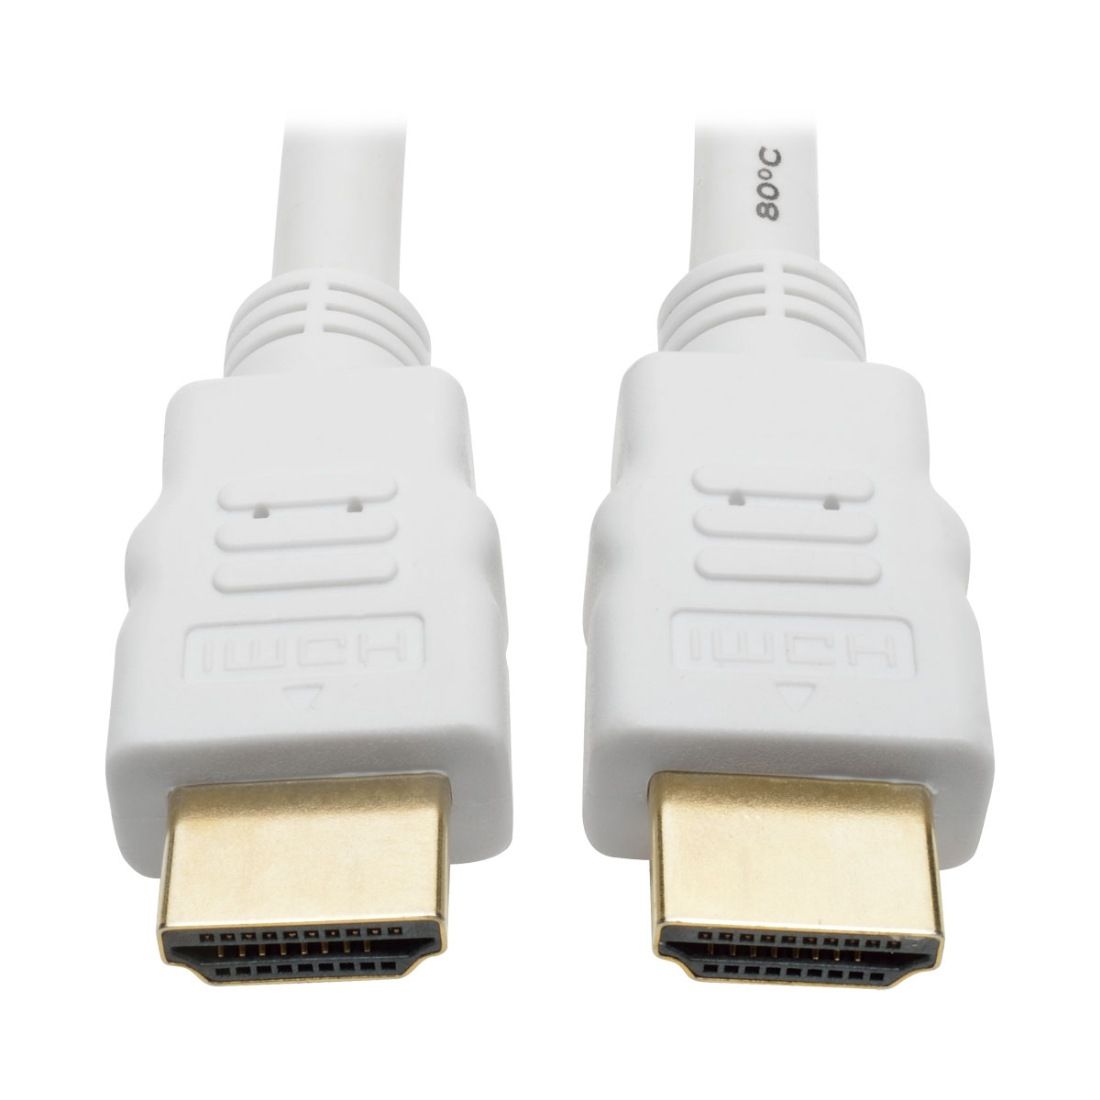 PremiumCord HDMI High Speed + Ethernet kabel,bílý, zlacené konektory, 3m